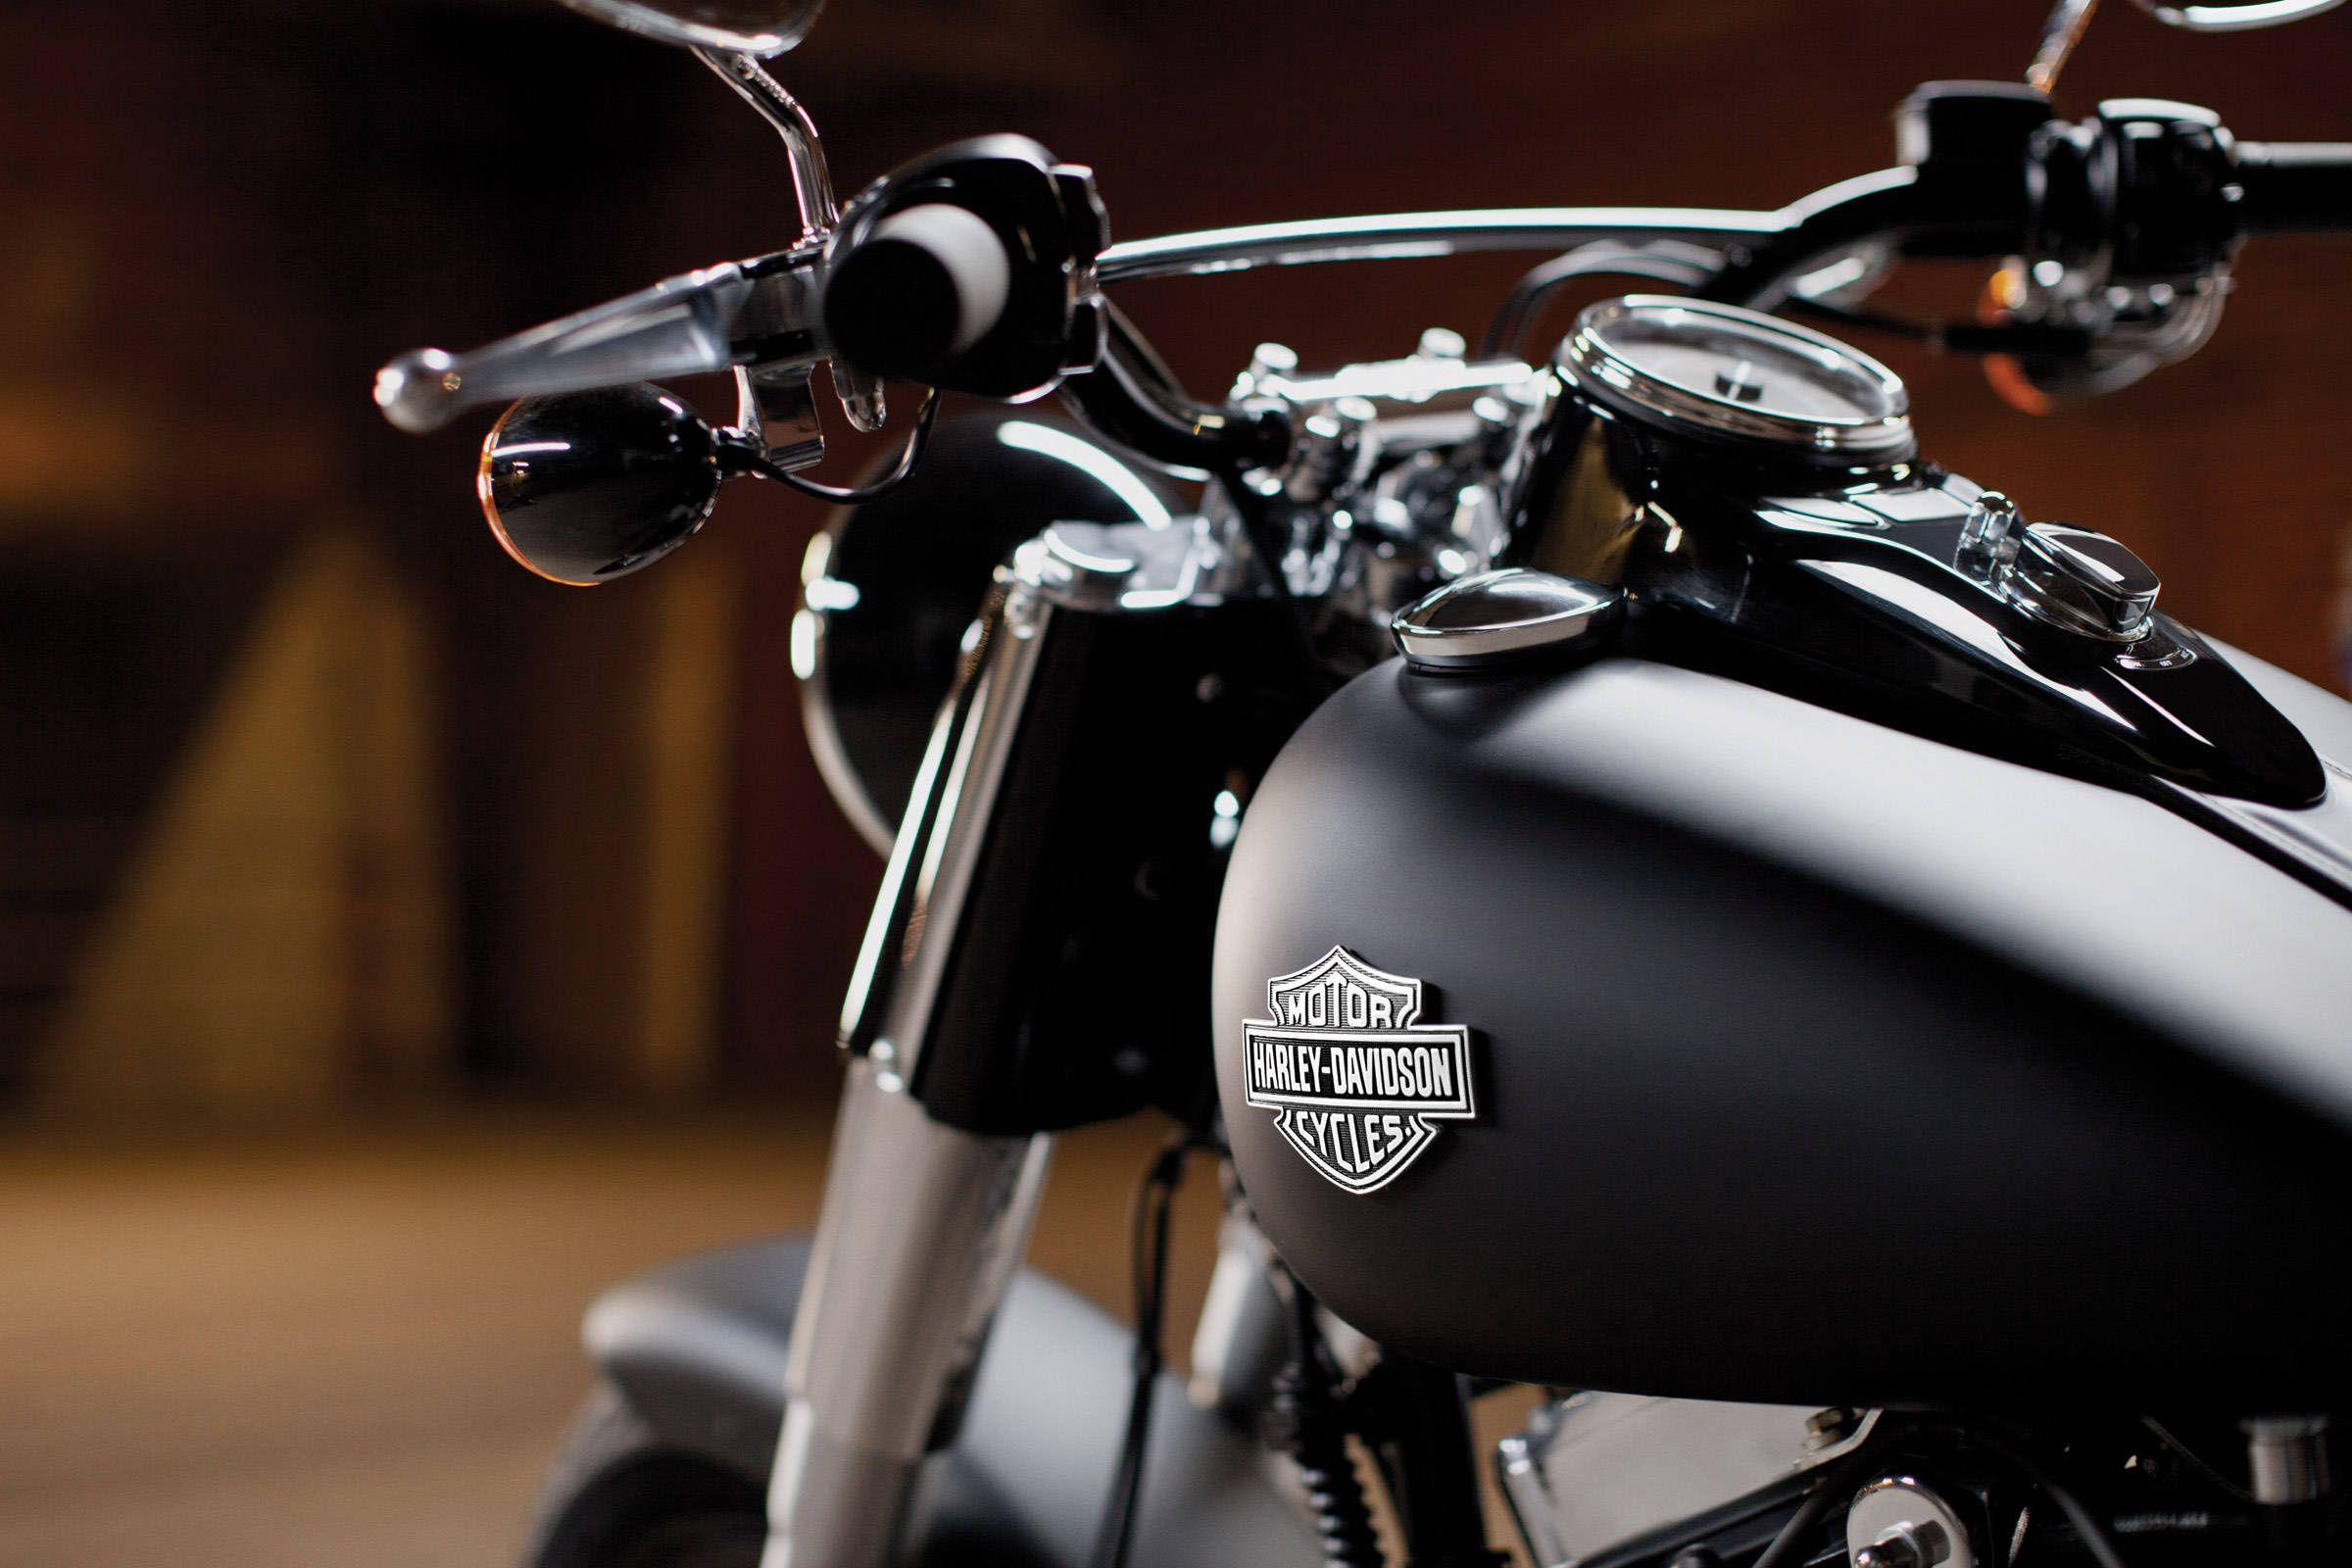 Harley Davidson Logo On Black Motorcycle